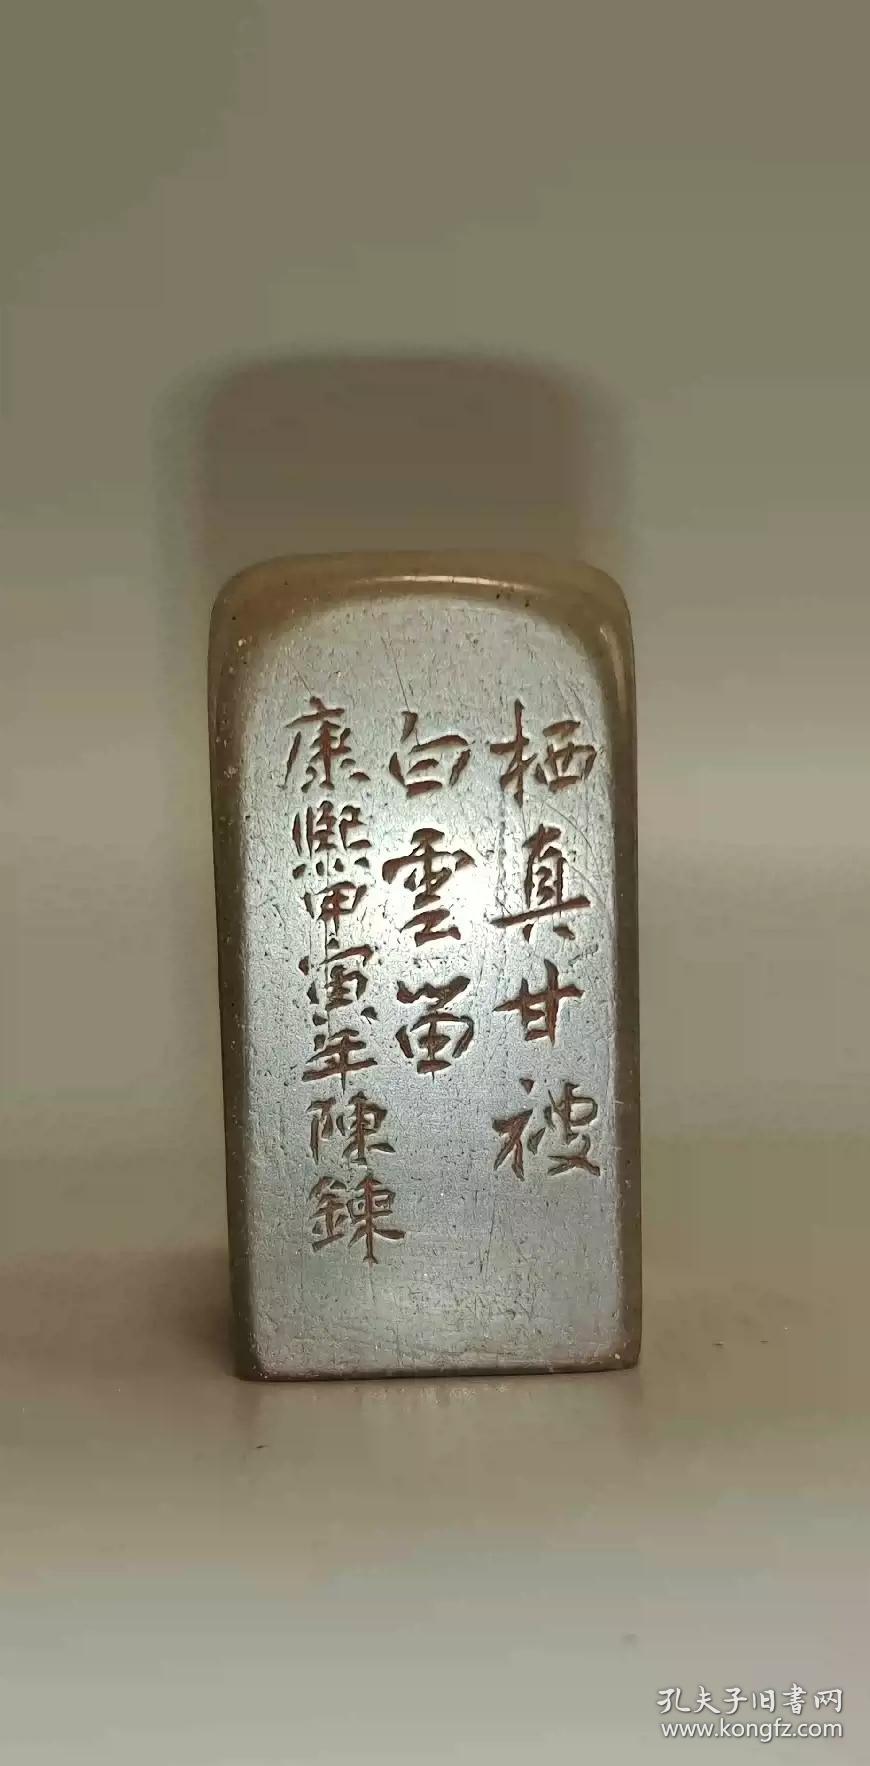 旧藏老寿山石印章。